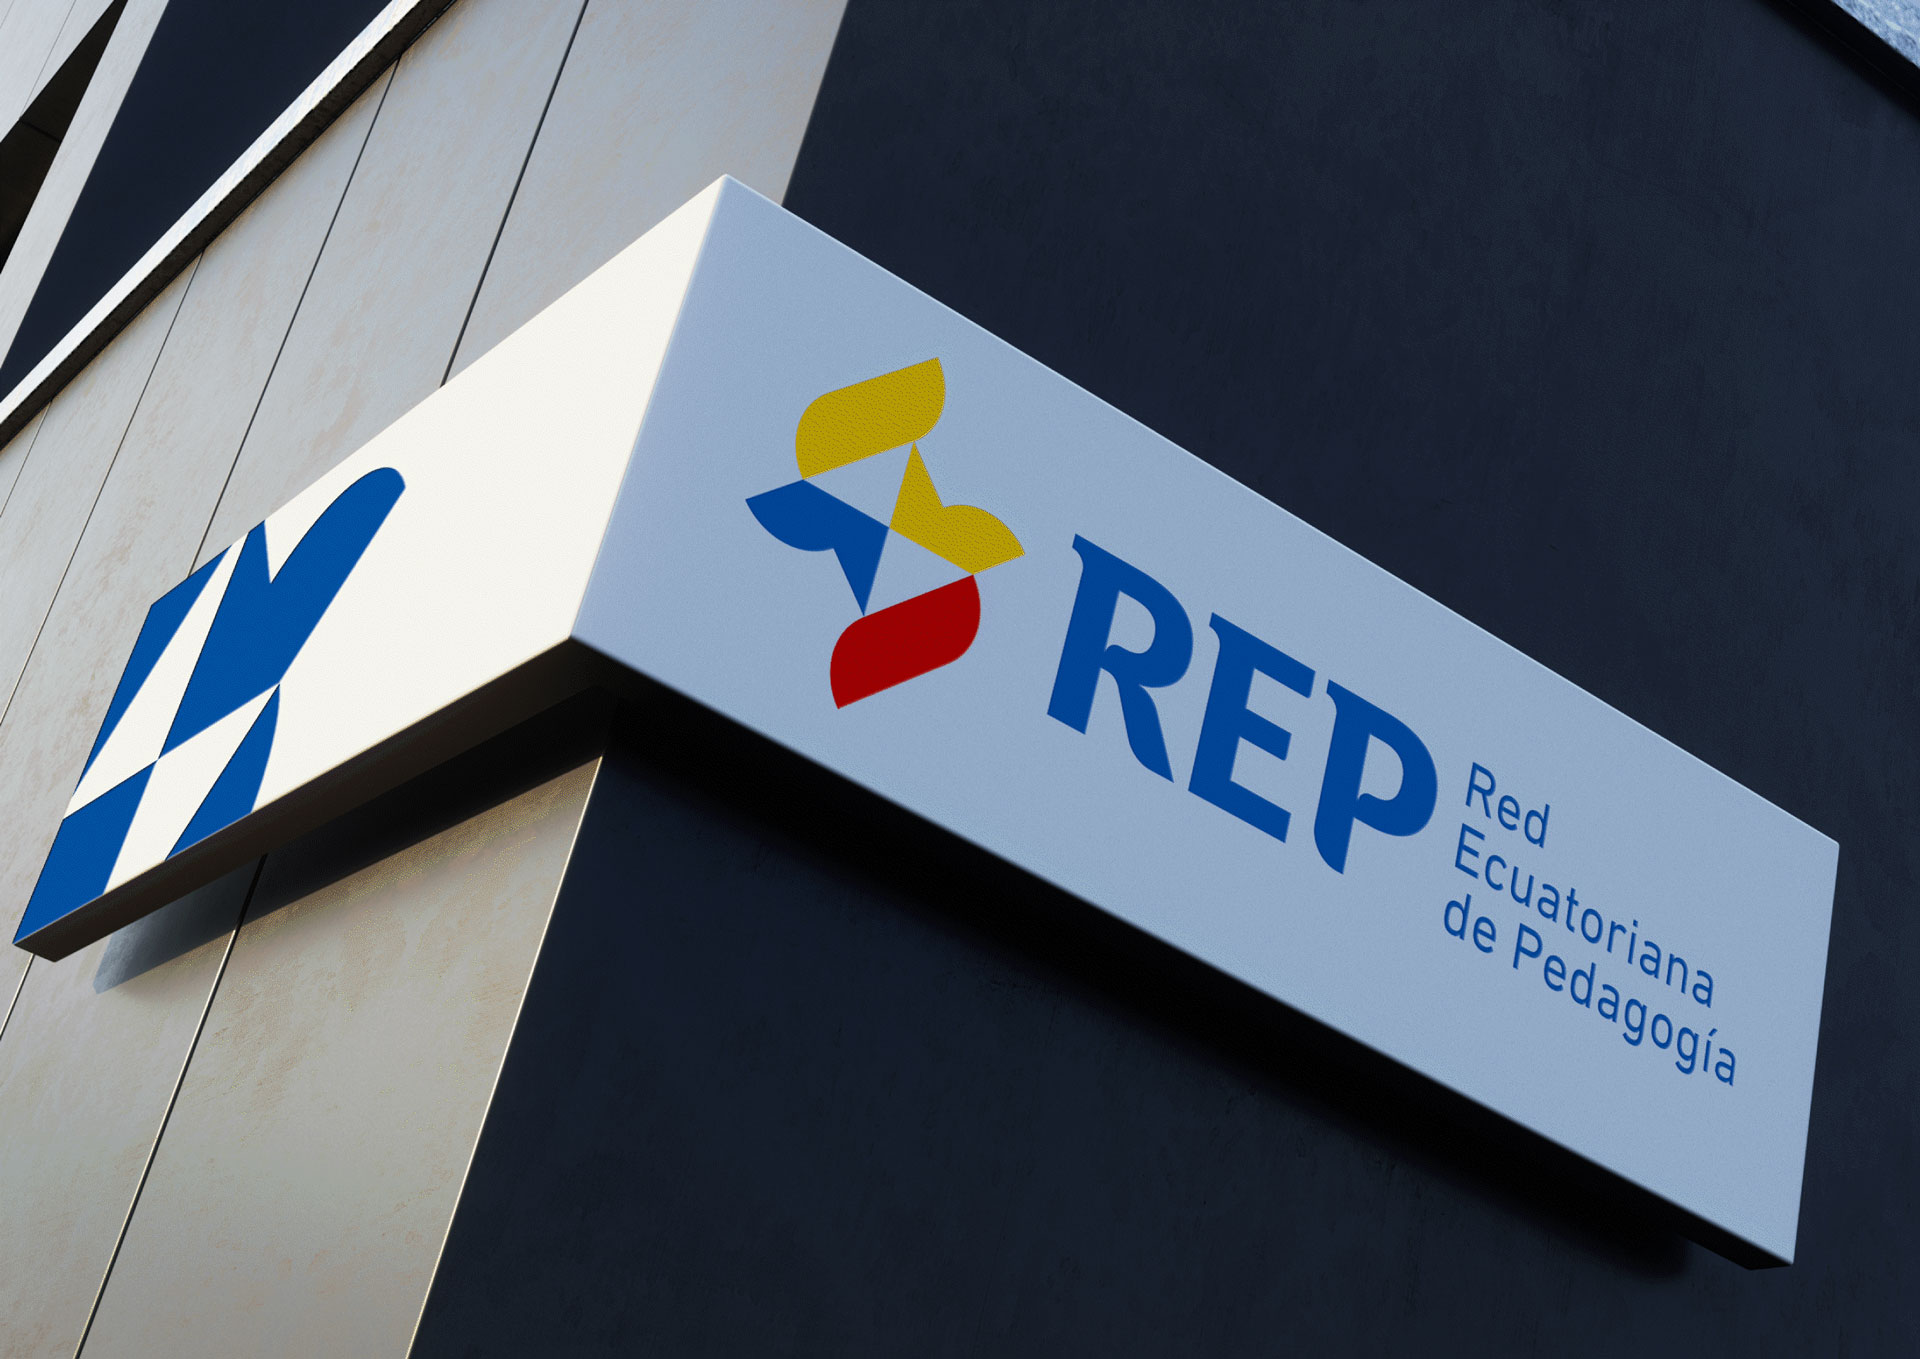 REP Red Ecuatoriana de Pedagogía